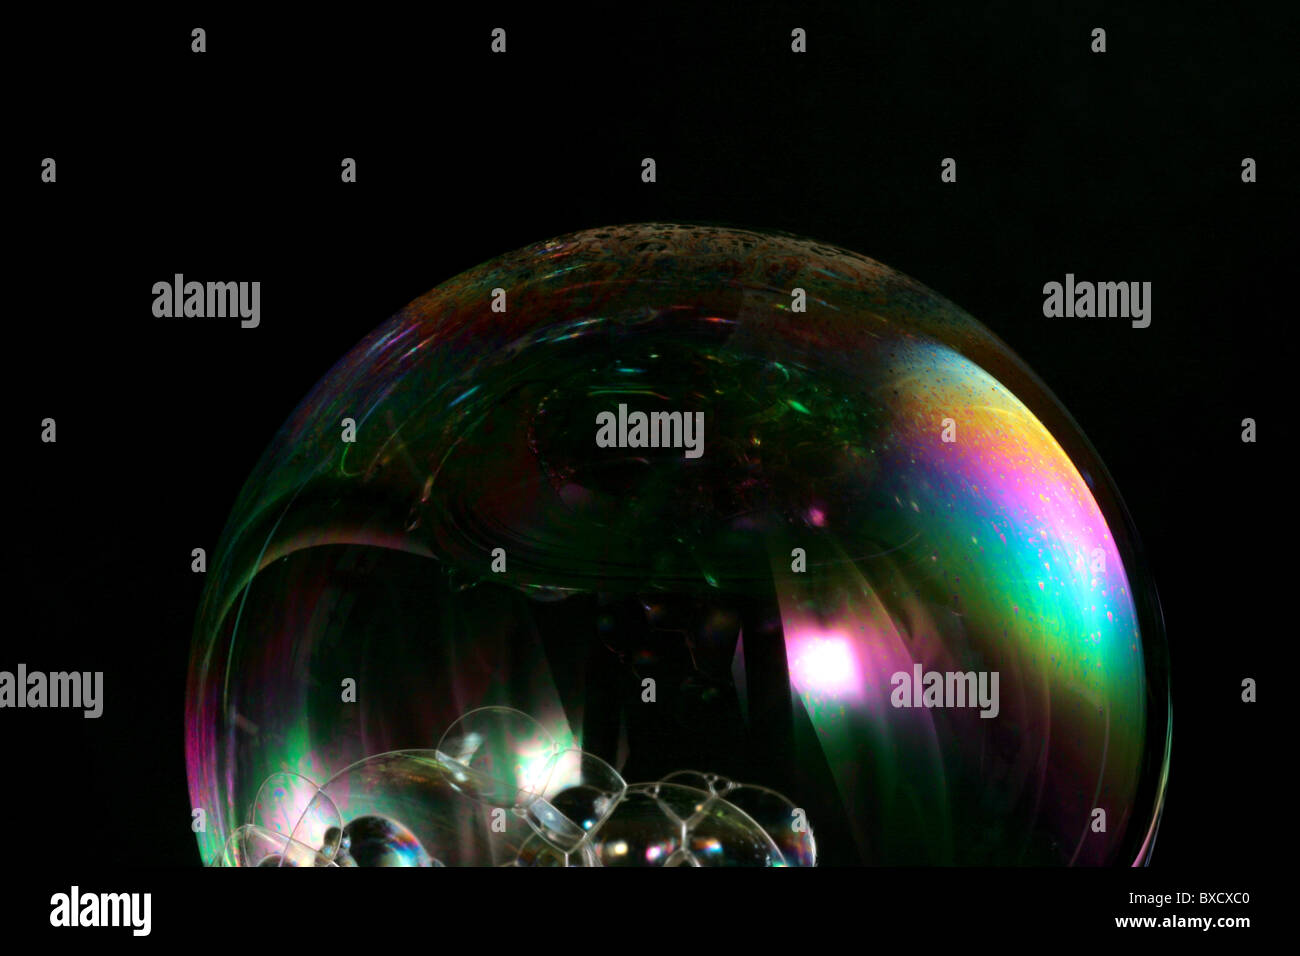 Eine Nahaufnahme von einer Seifenblase widerspiegelt einen Regenbogen von Licht auf einem schwarzen Hintergrund. Stockfoto